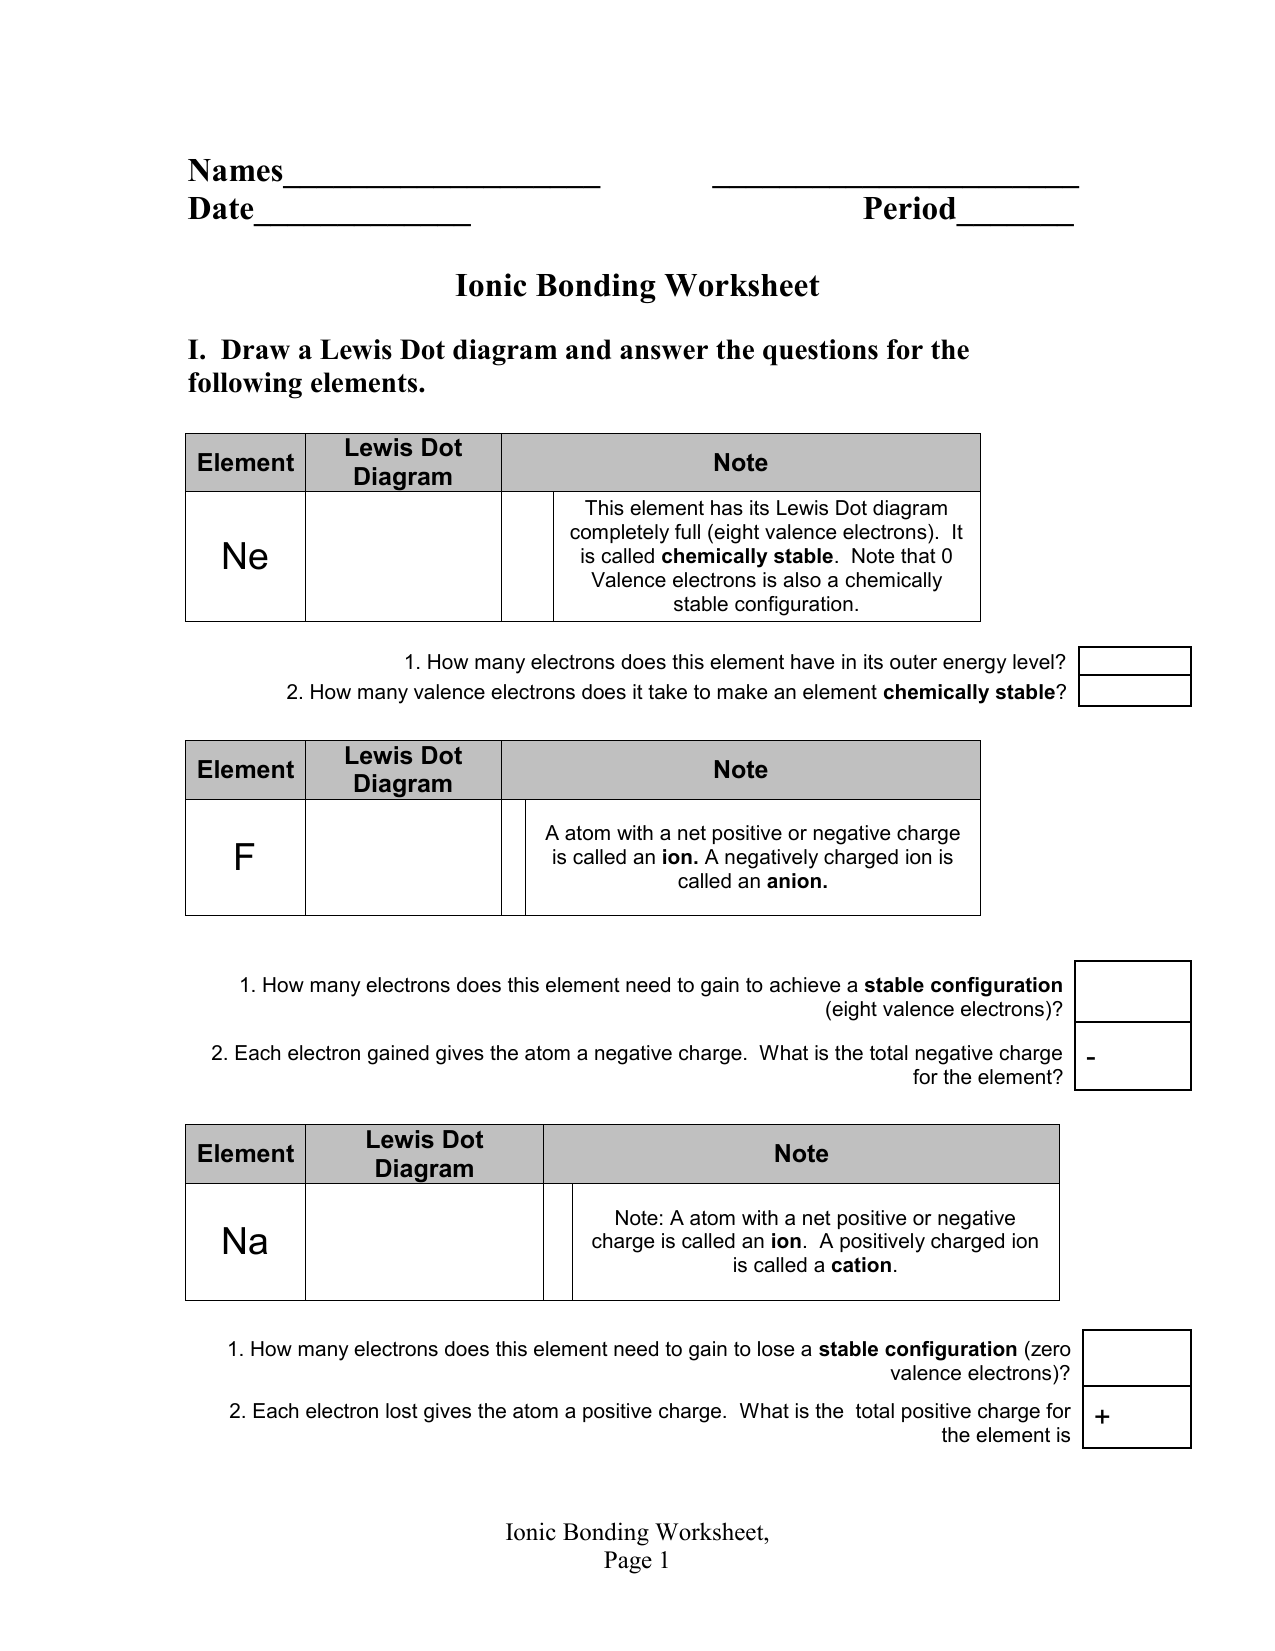 Ionic Bonding Worksheet In Ionic Bonding Worksheet Key